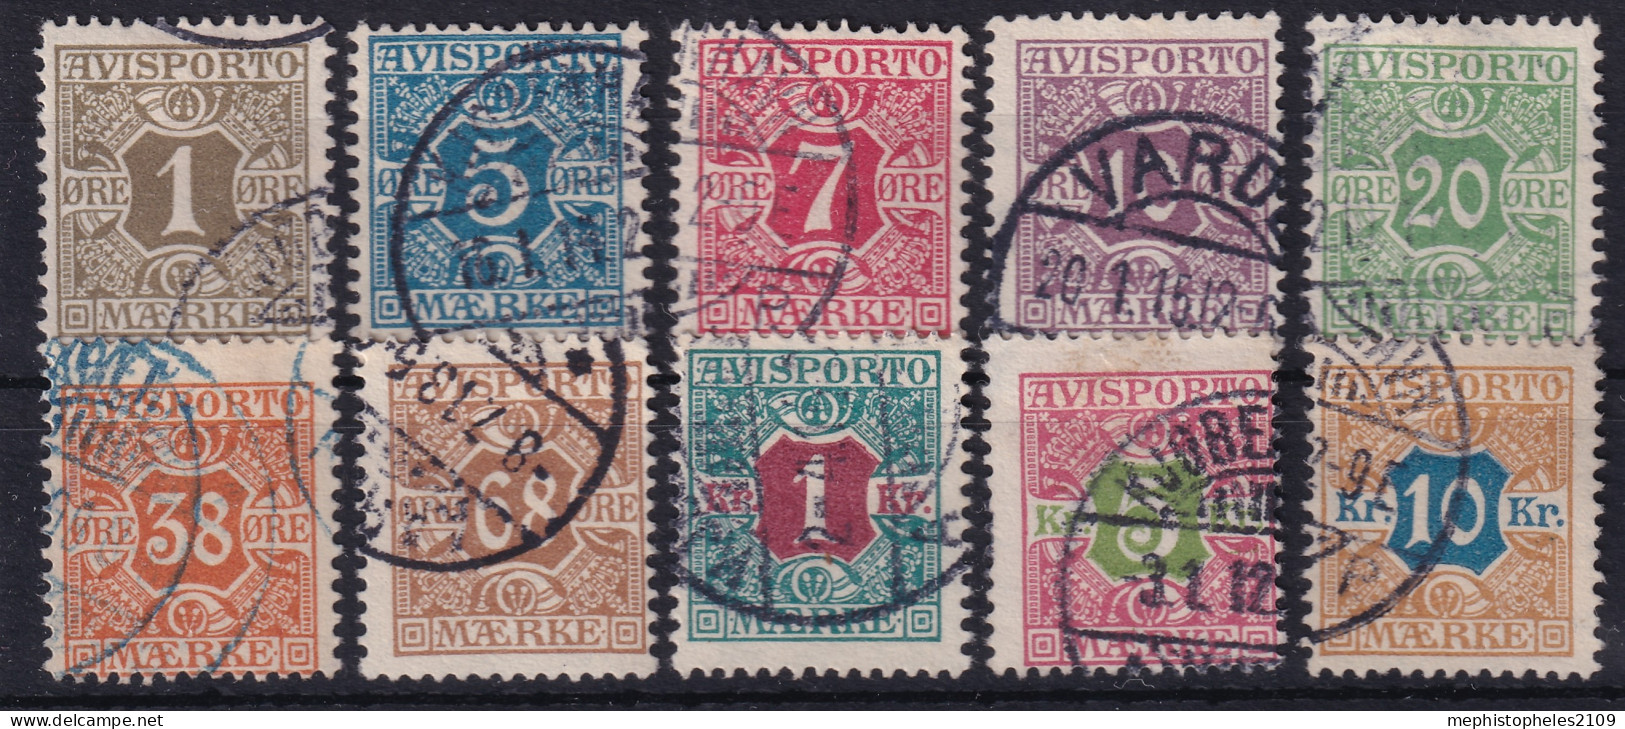 DENMARK 1907 - Canceled - Sc# P1-P10 - Newspaper Stamps - Complete Set! - Portomarken